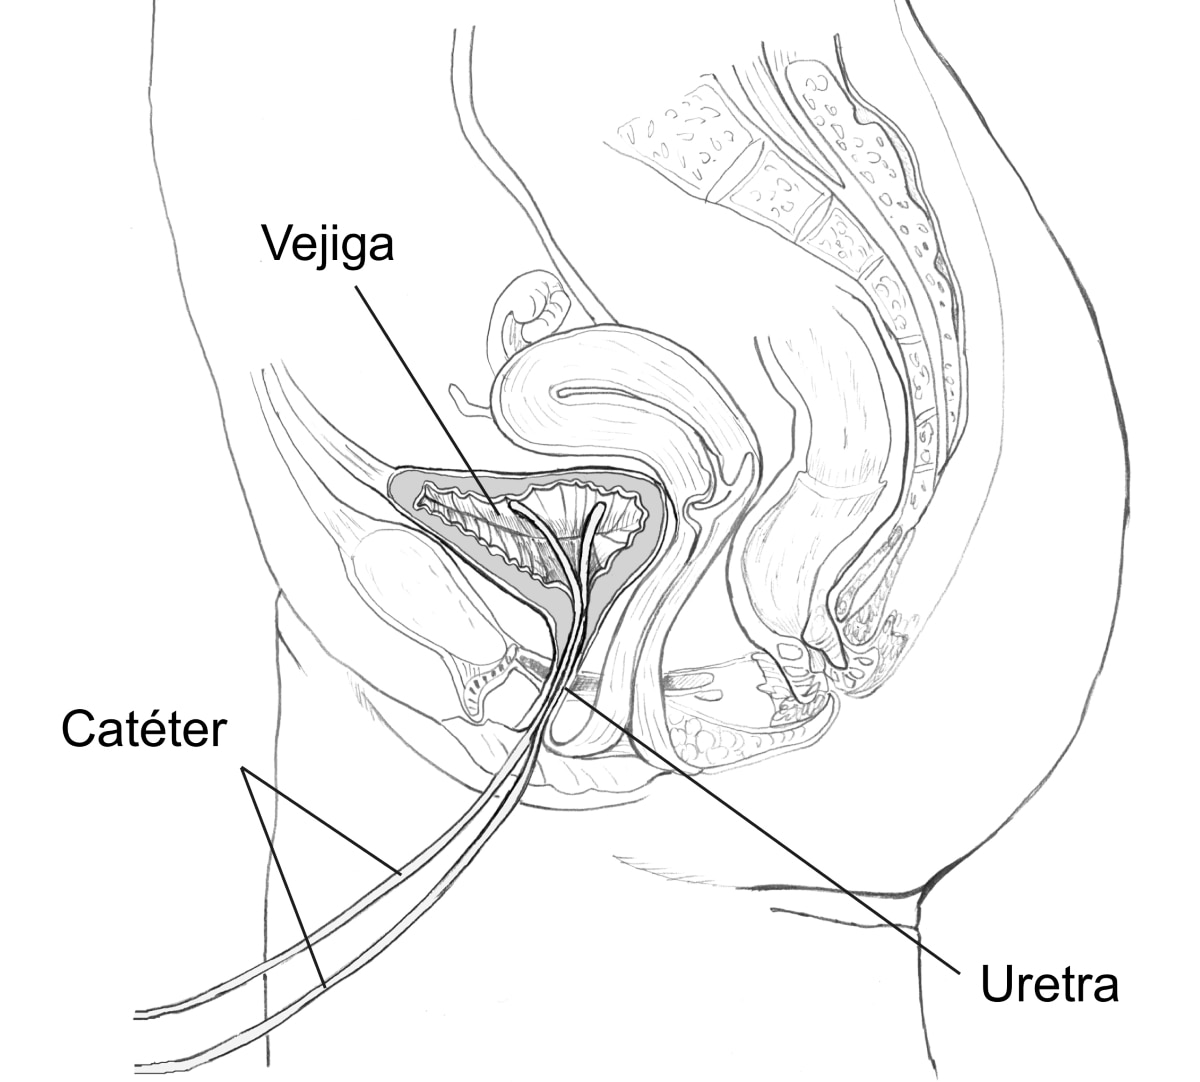 Dibujo de una vista lateral de las vías urinarias femeninas con catéteres insertados a través de la uretra hasta la vejiga. Los catéteres, la uretra y la vejiga están etiquetados.